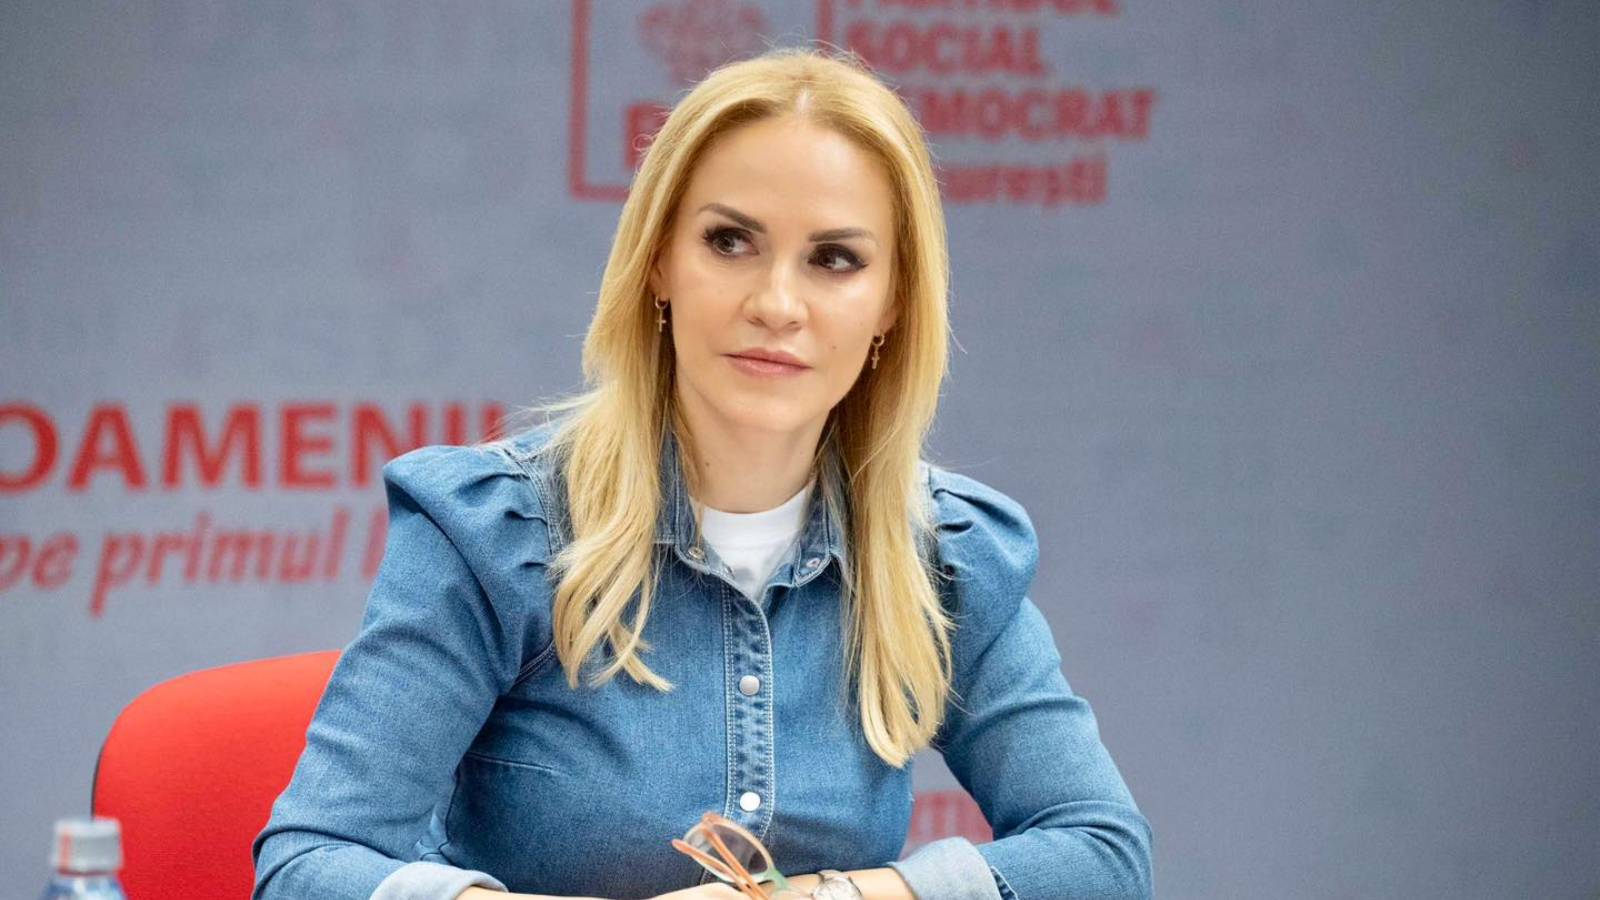 Gabriela Firea Annunci Ufficiali LAST MINUTE Designazione PSD Candidata al Municipio di Bucarest